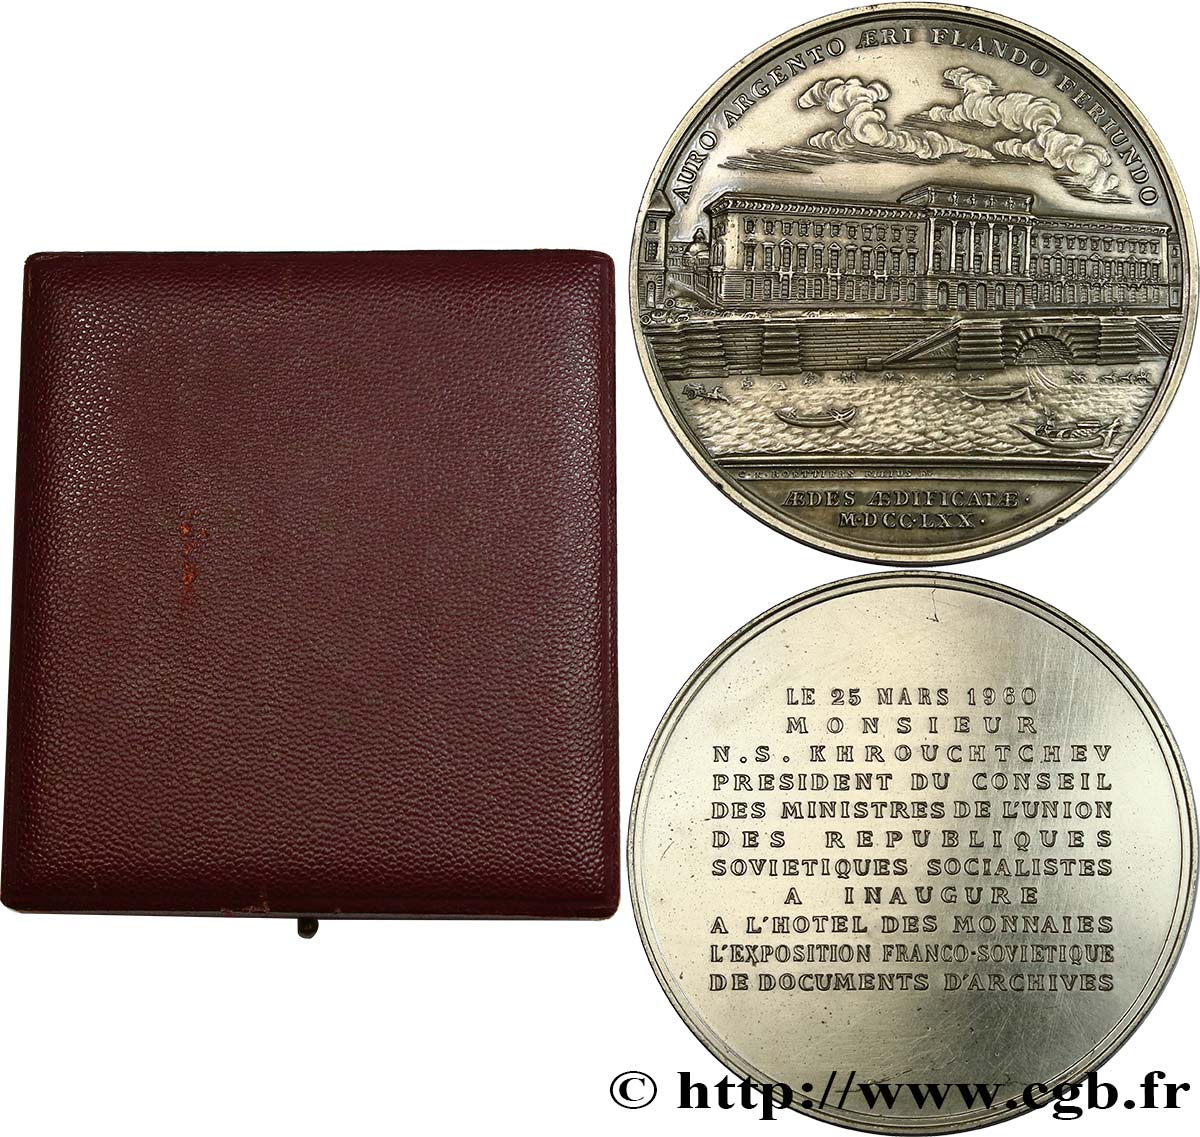 QUINTA REPUBLICA FRANCESA Médaille pour la visite de la Monnaie, exposition franco-soviétique EBC